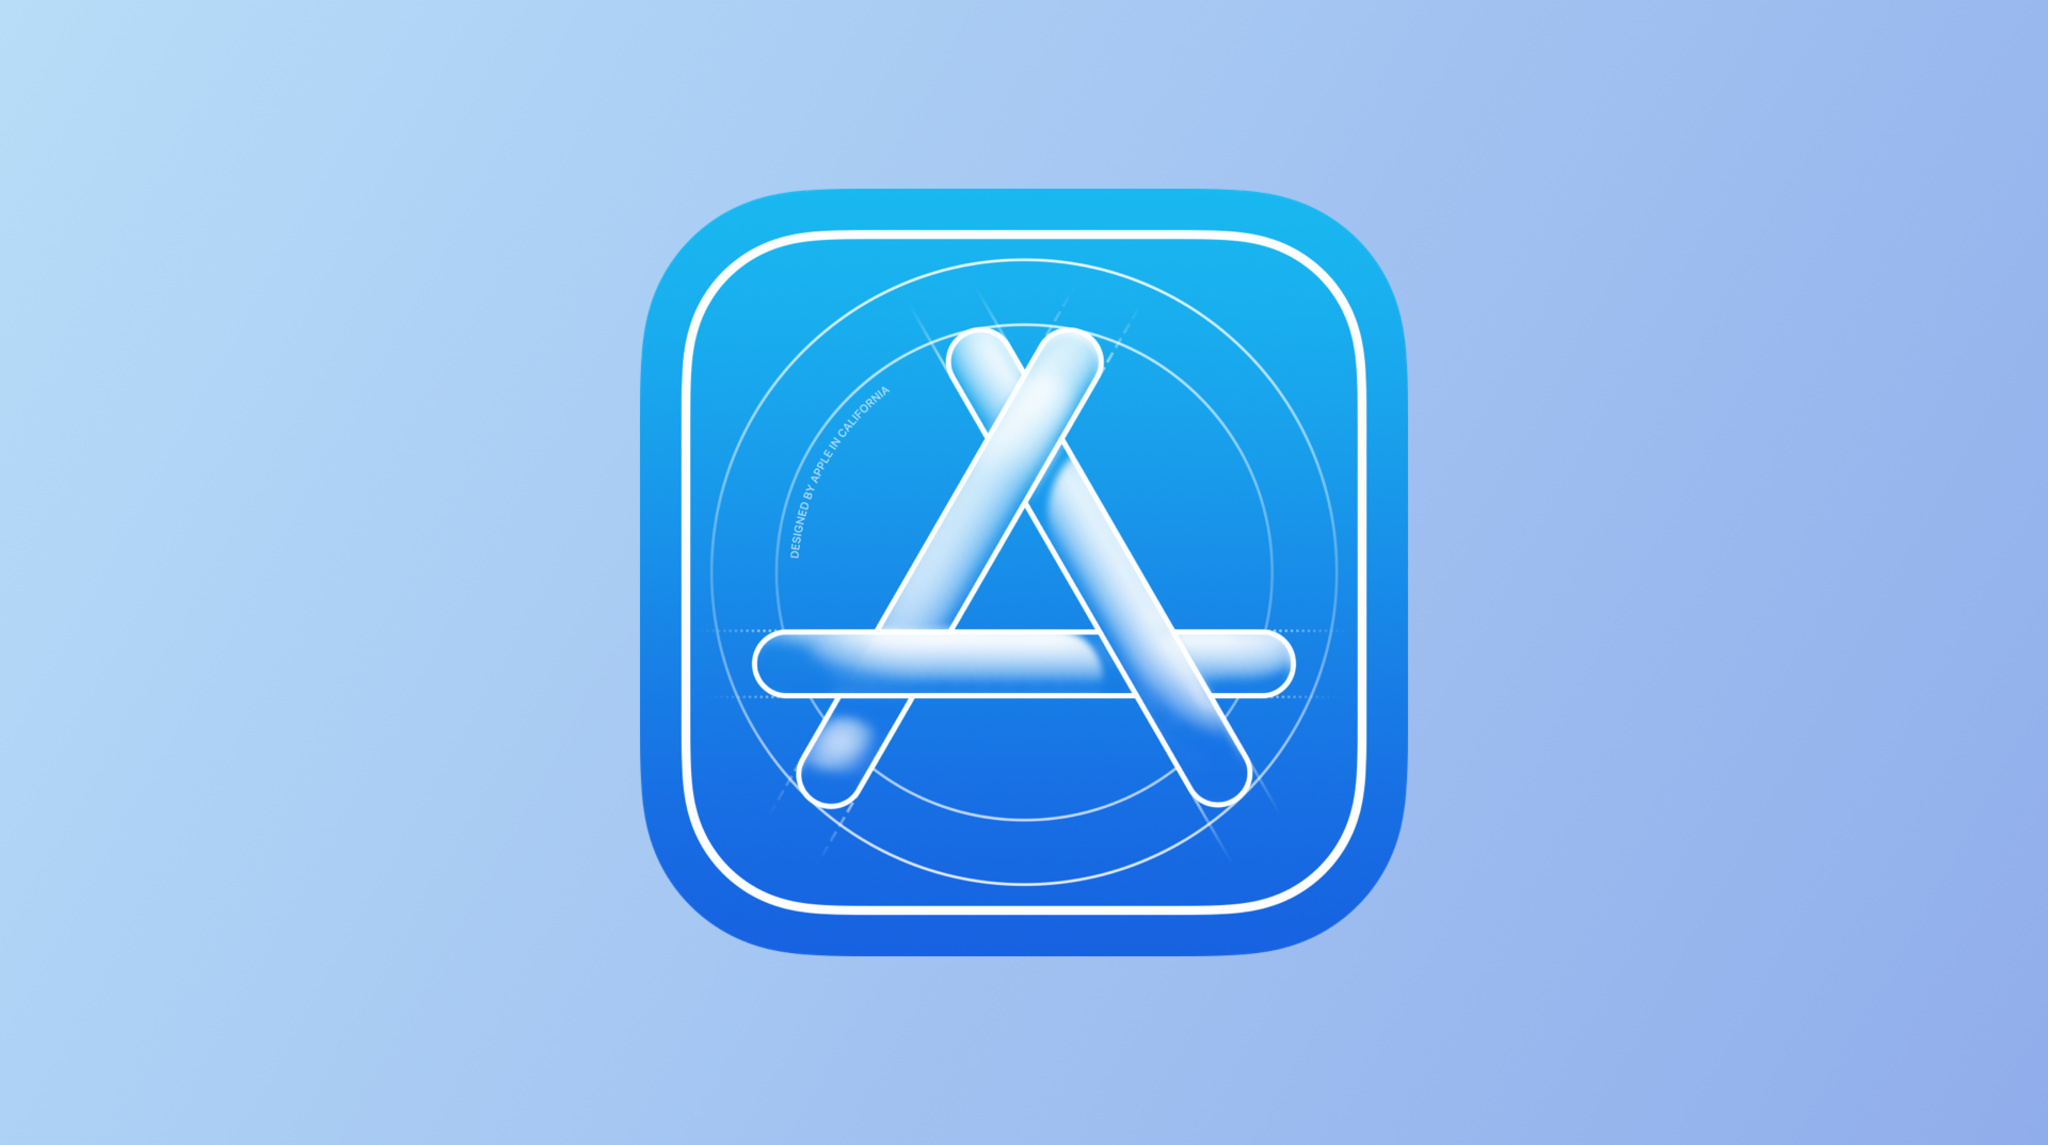 L'icône de l'application Apple Developer s'affiche au centre de cette image en vedette, sur un dégradé bleu clair en arrière-plan